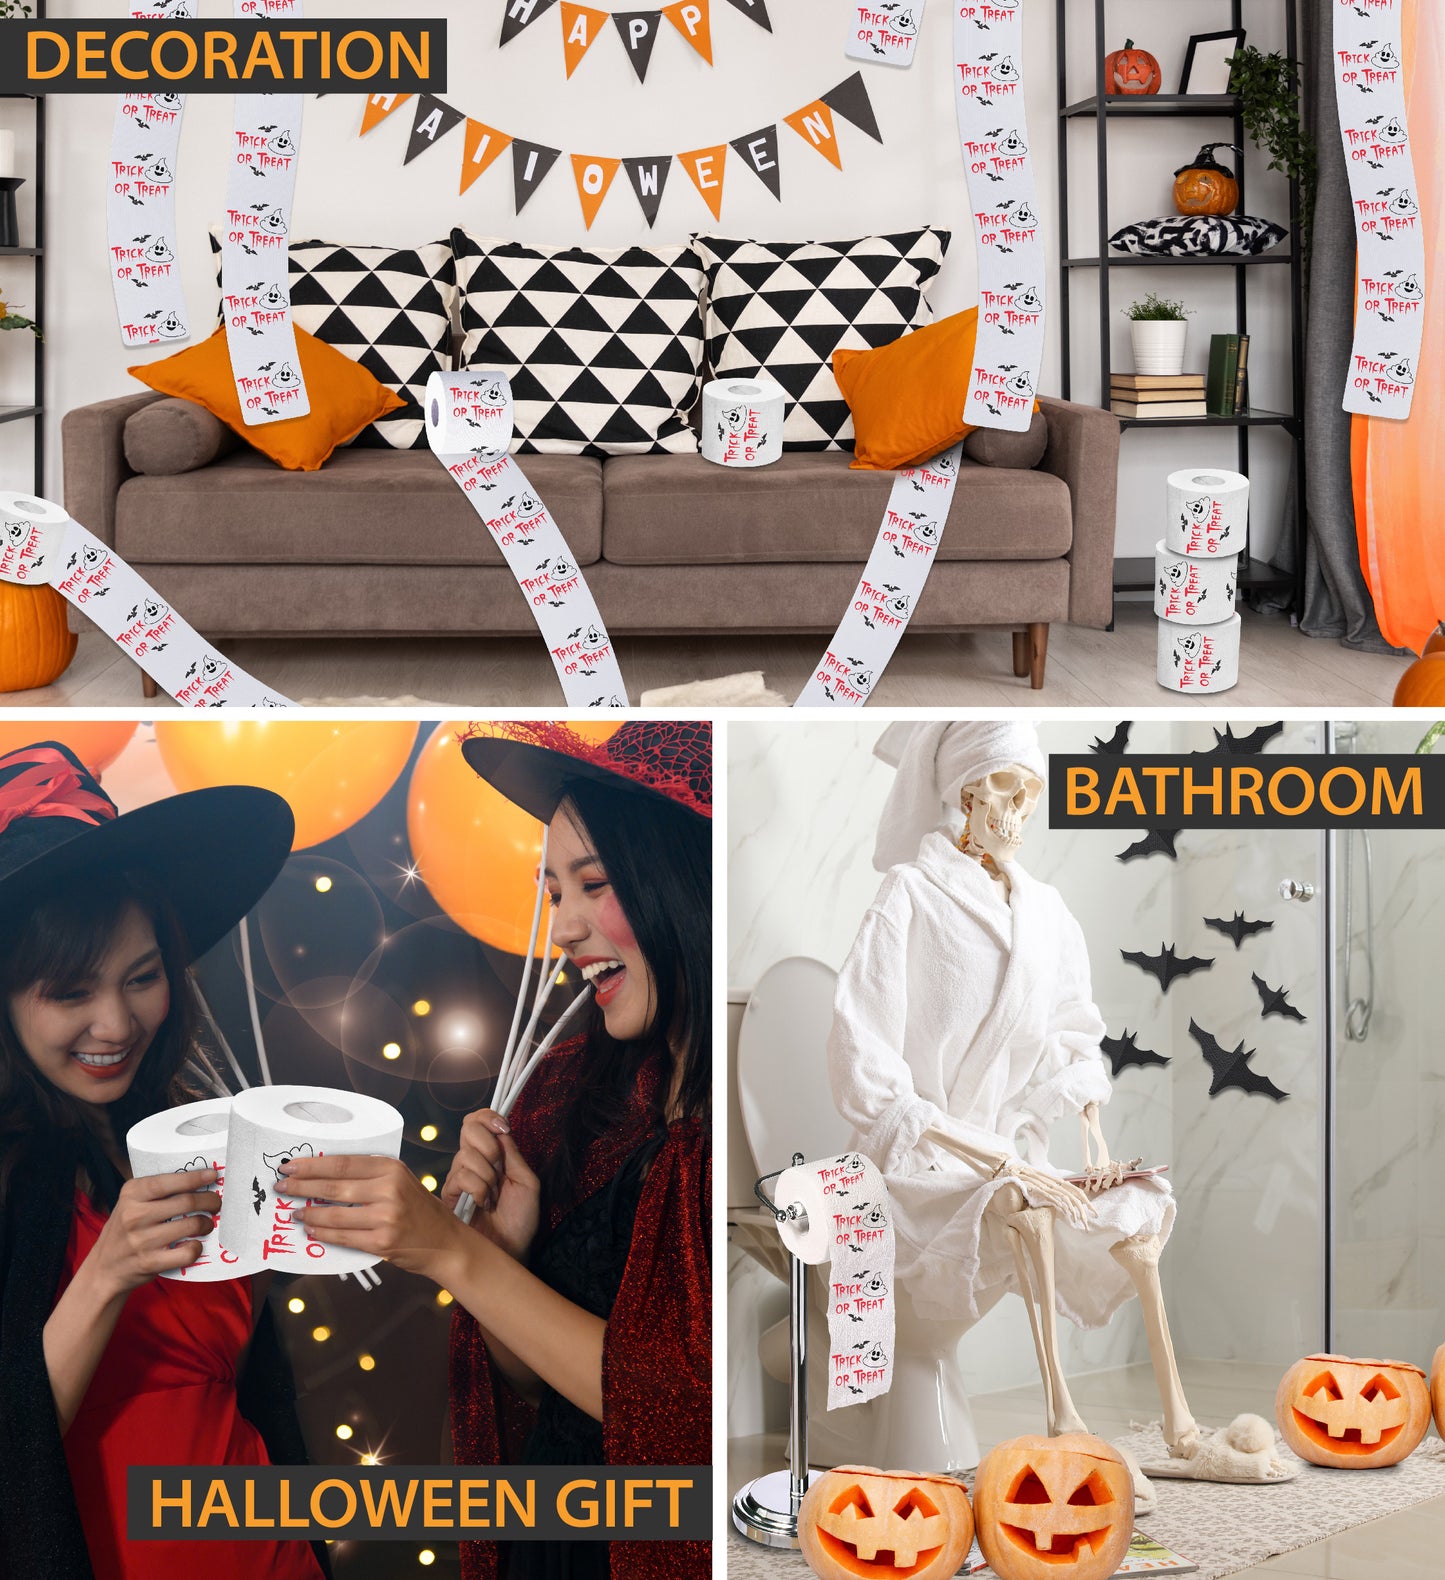 Printed TP Halloween Trick or Treat Poop Ghost Printed Toilet Paper – 500 Sheet